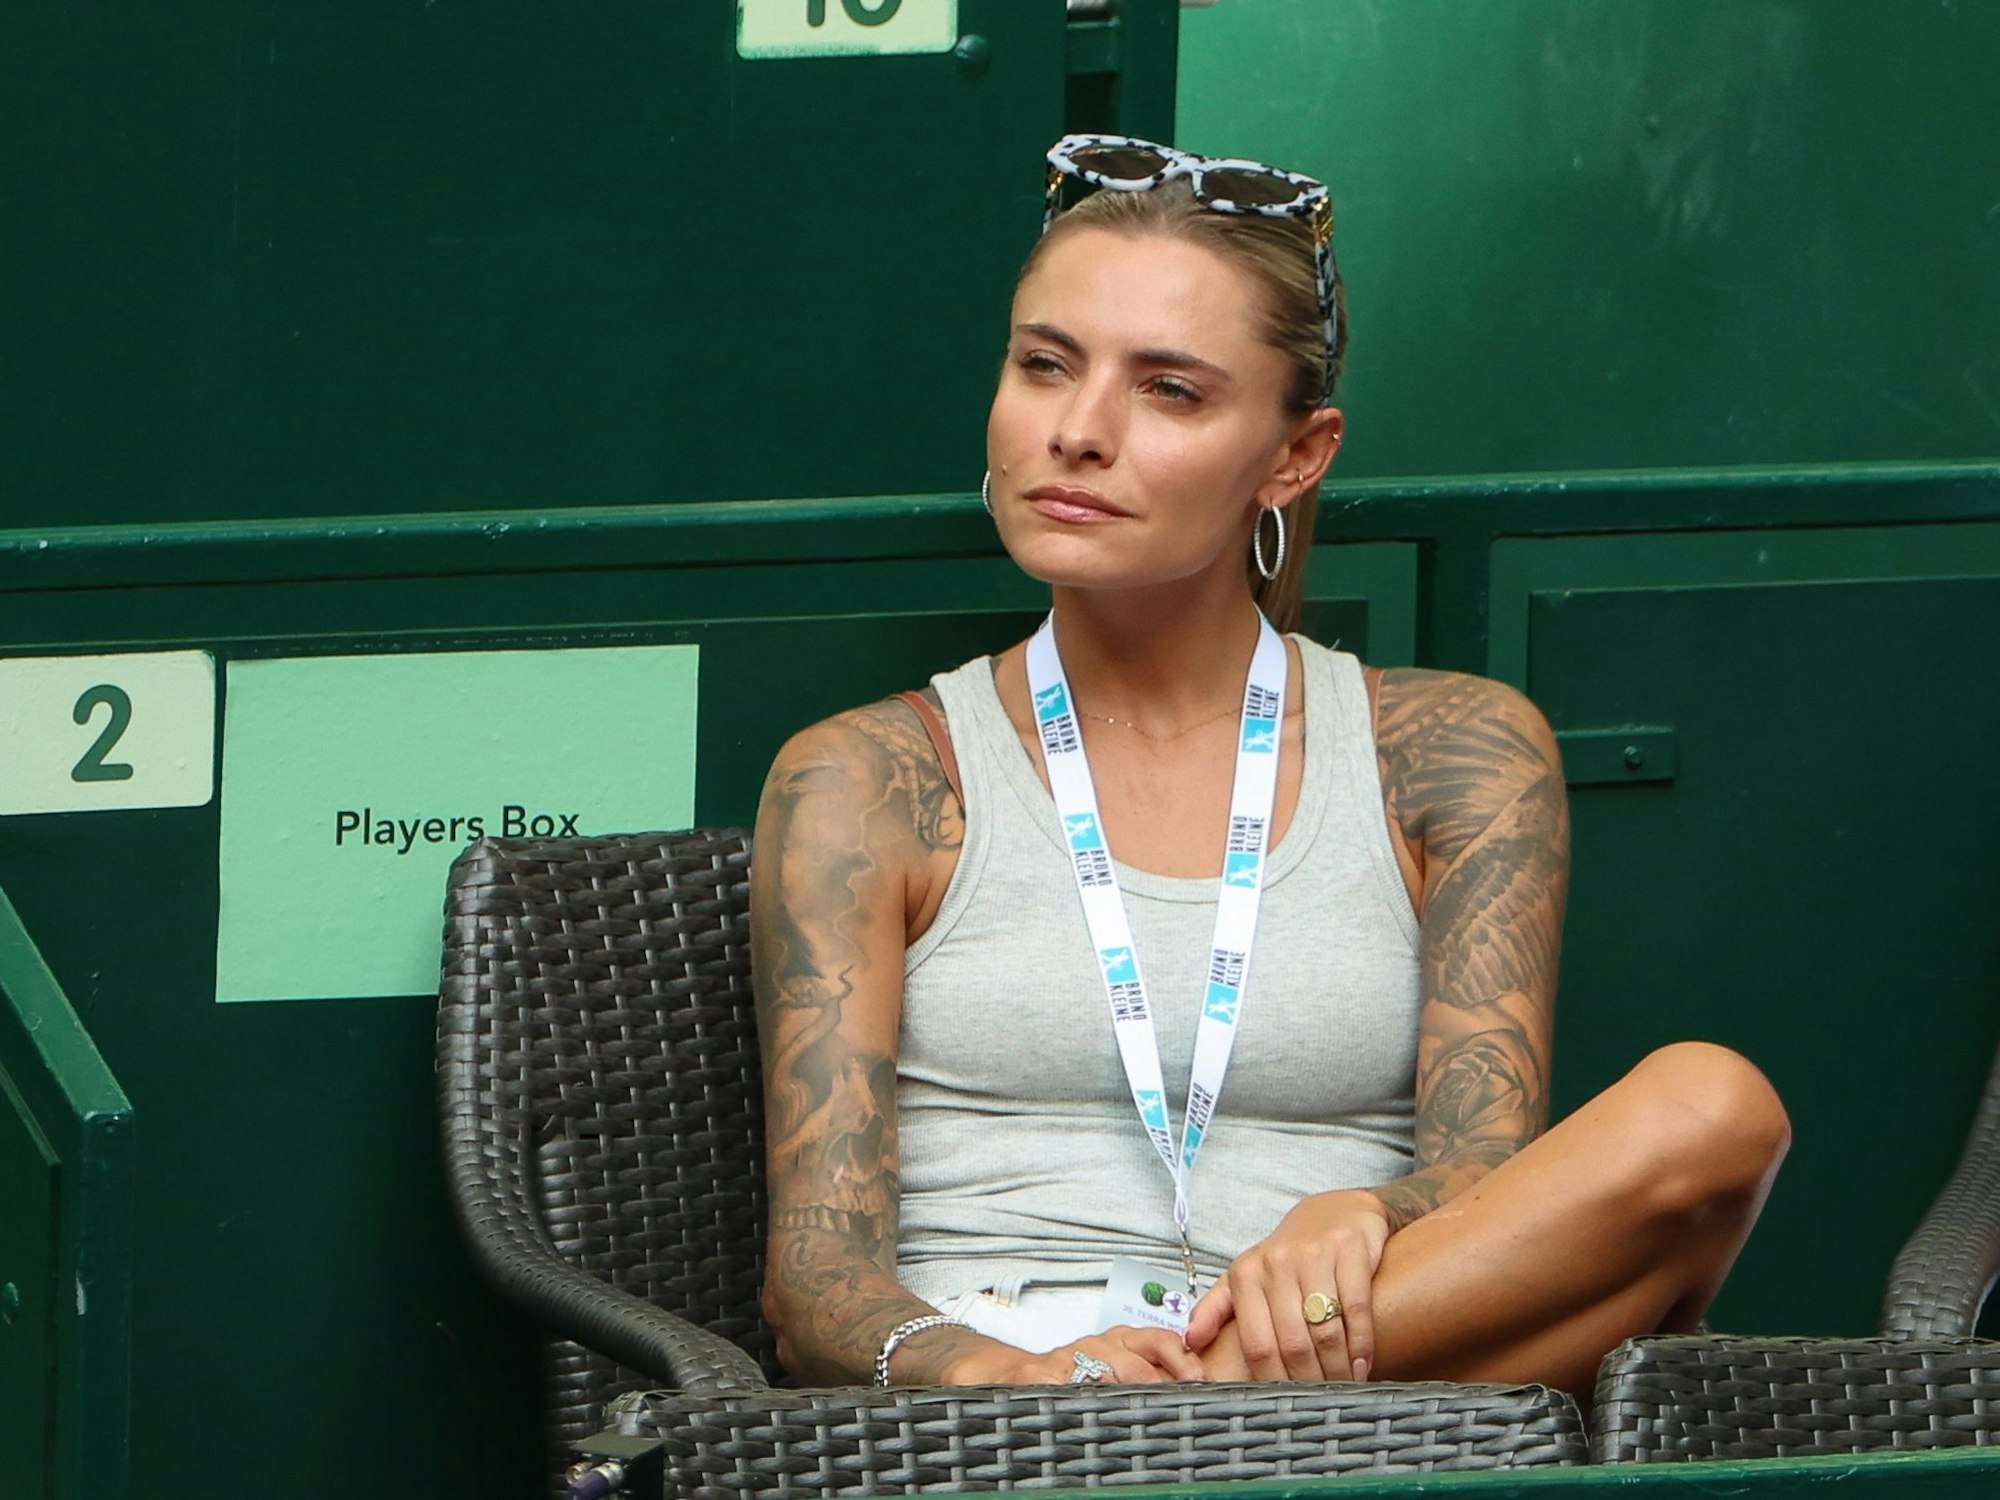 Schauspielerin und Model Sophia Thomalla beobachtet aus einer Loge ein Tennis-Spiel ihres Freundes Alexander Zverev.